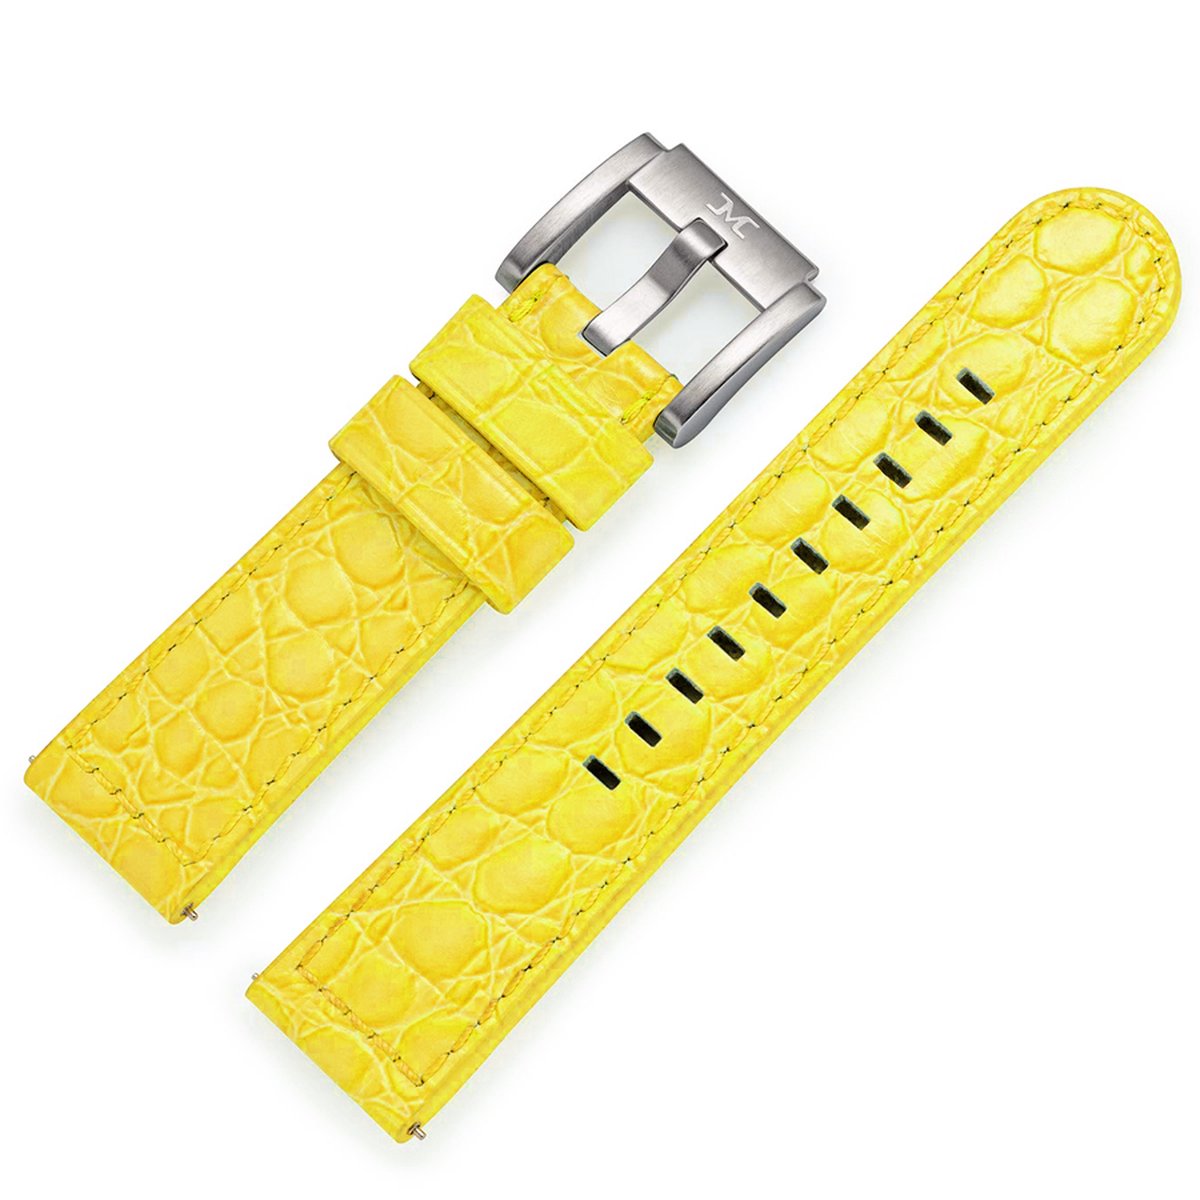 Marc Coblen - TW Steel Horlogeband Geel Leer Alligator 22mm